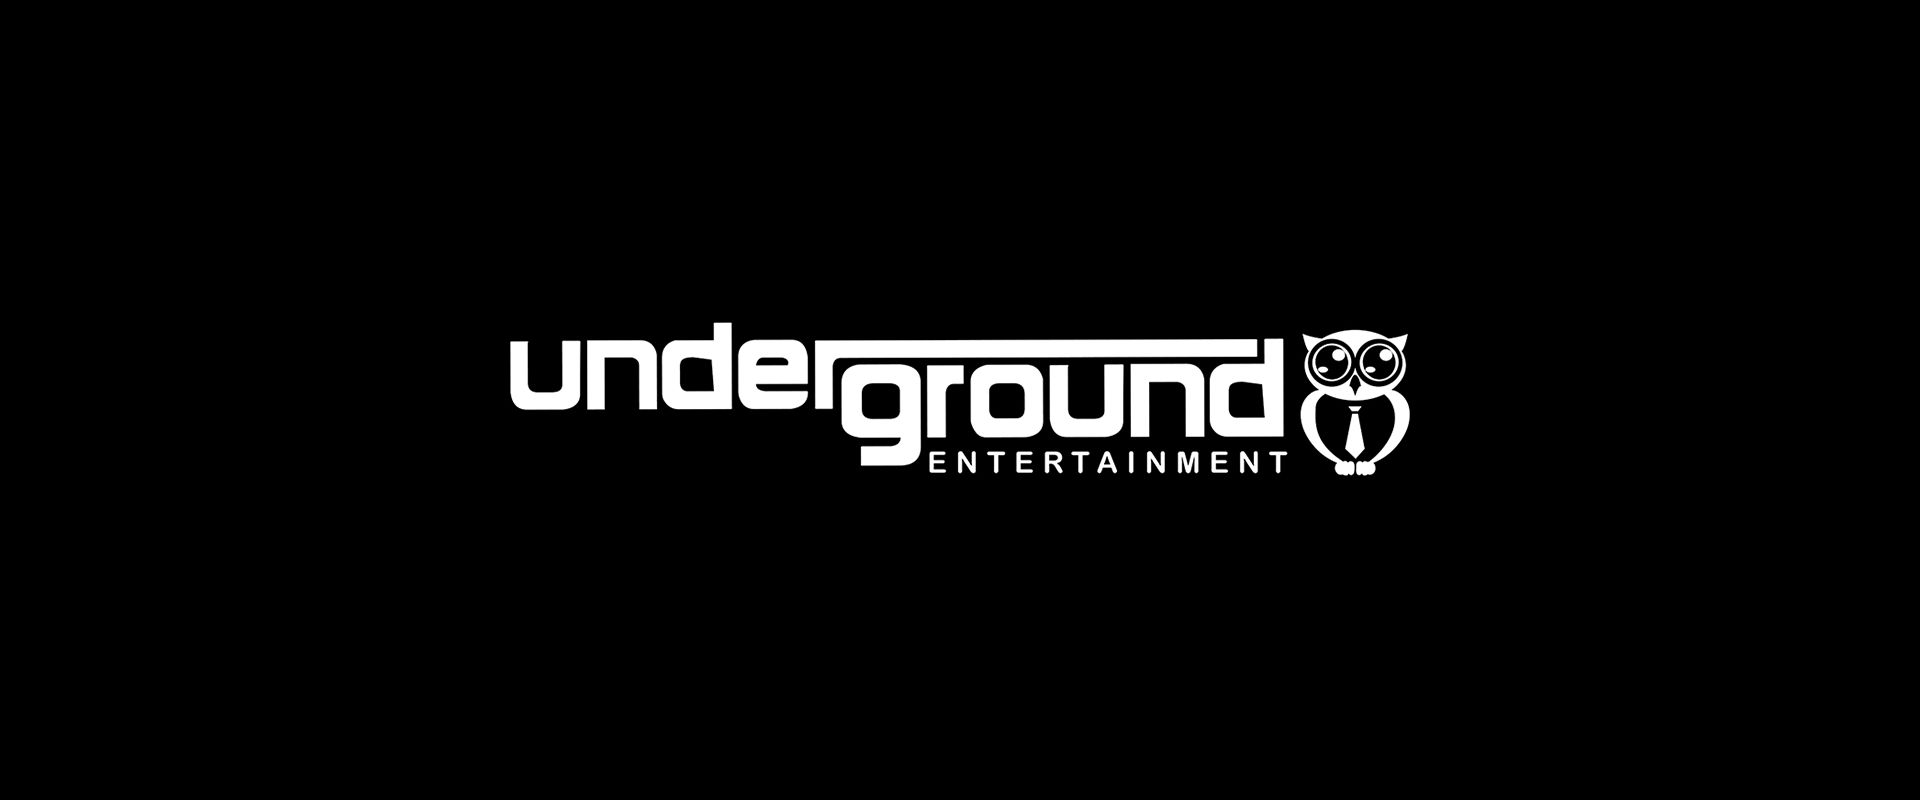 Underground Entertainment Main Banner